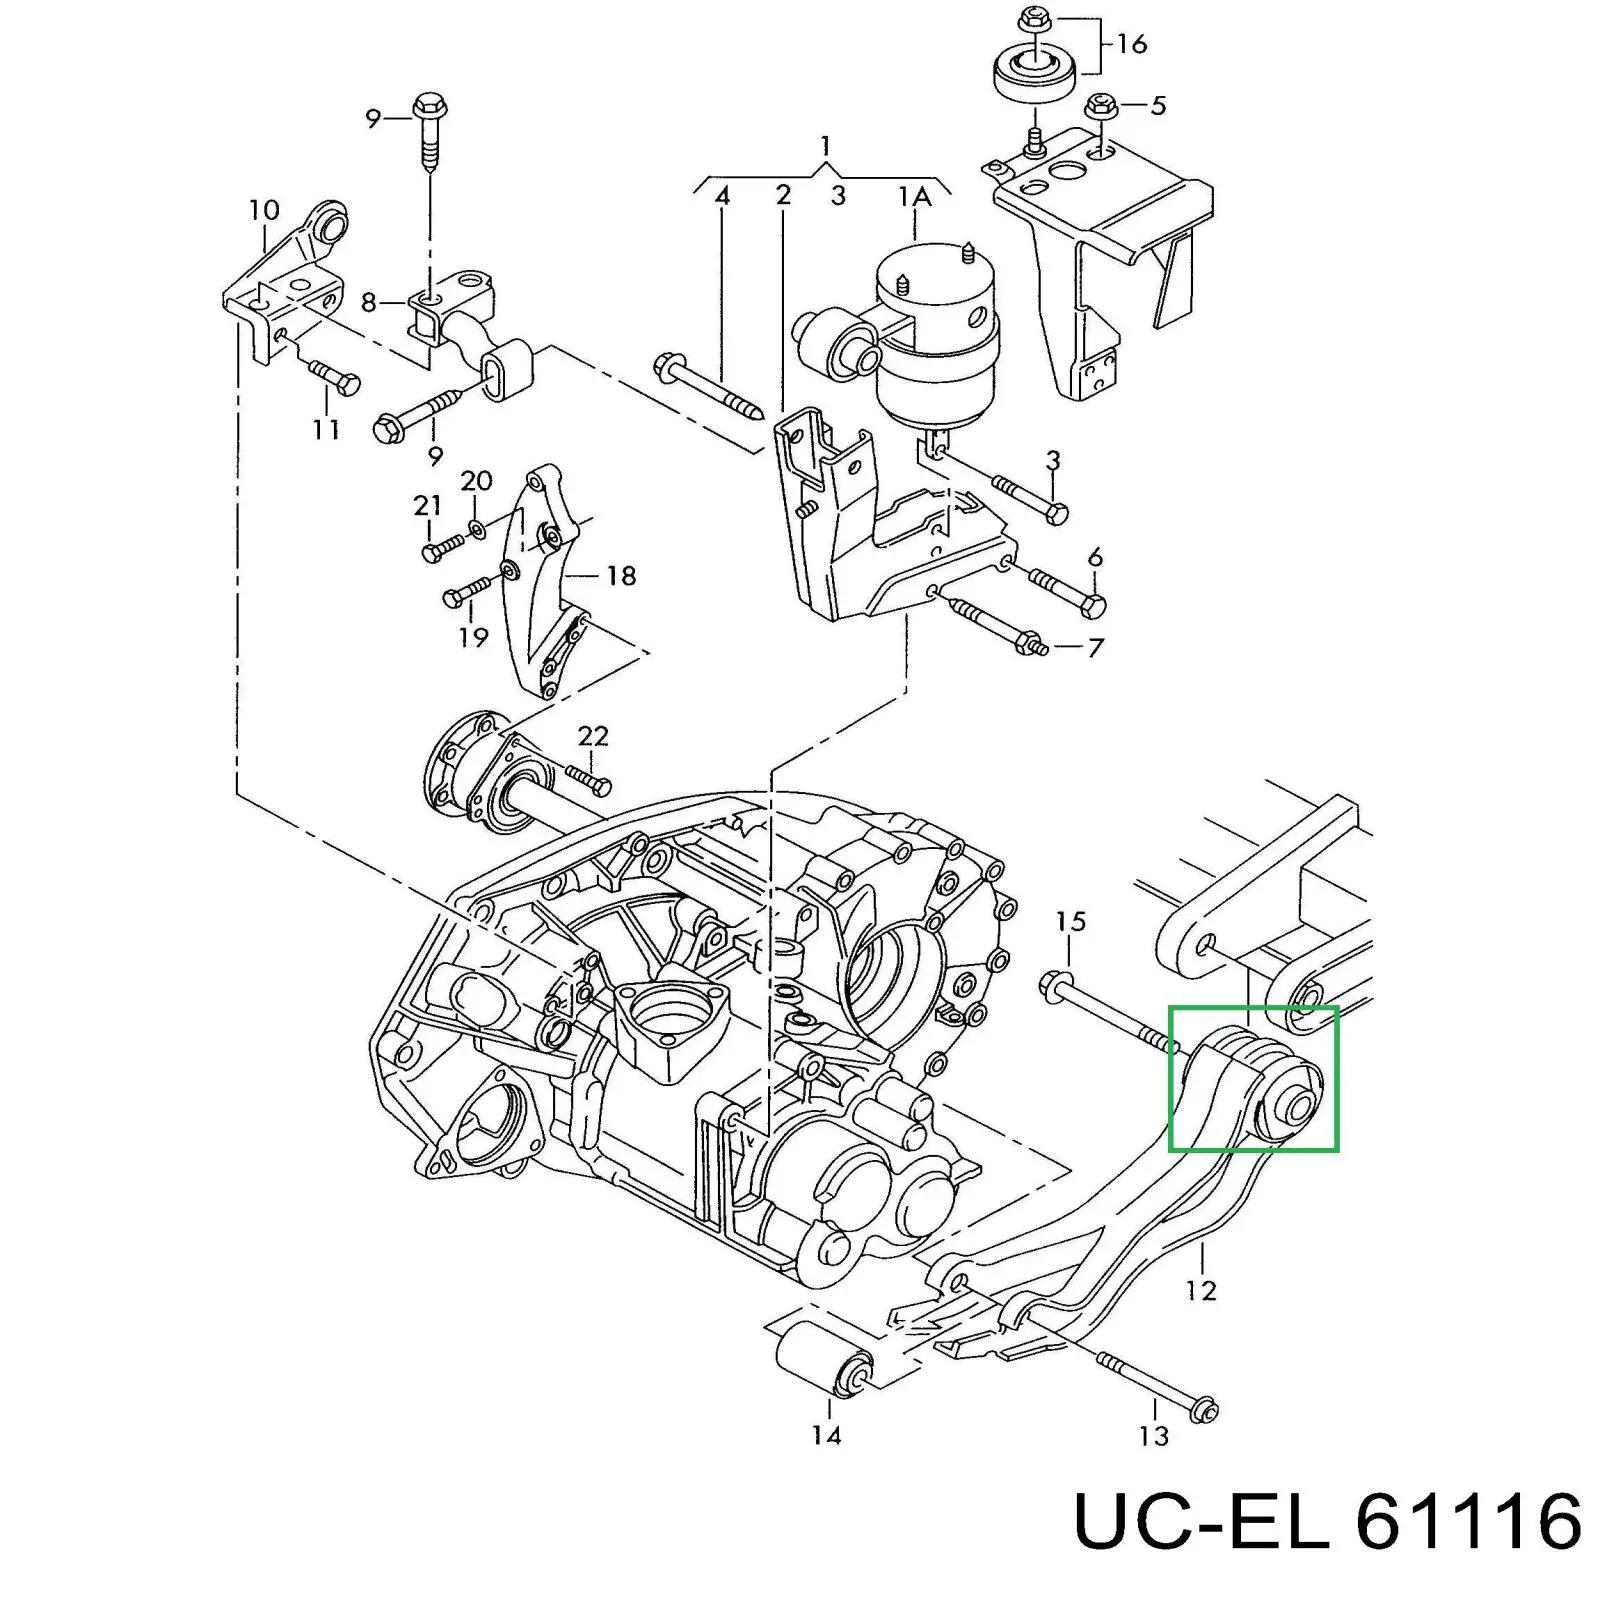 61116 Uc-el soporte, motor, trasero, silentblock